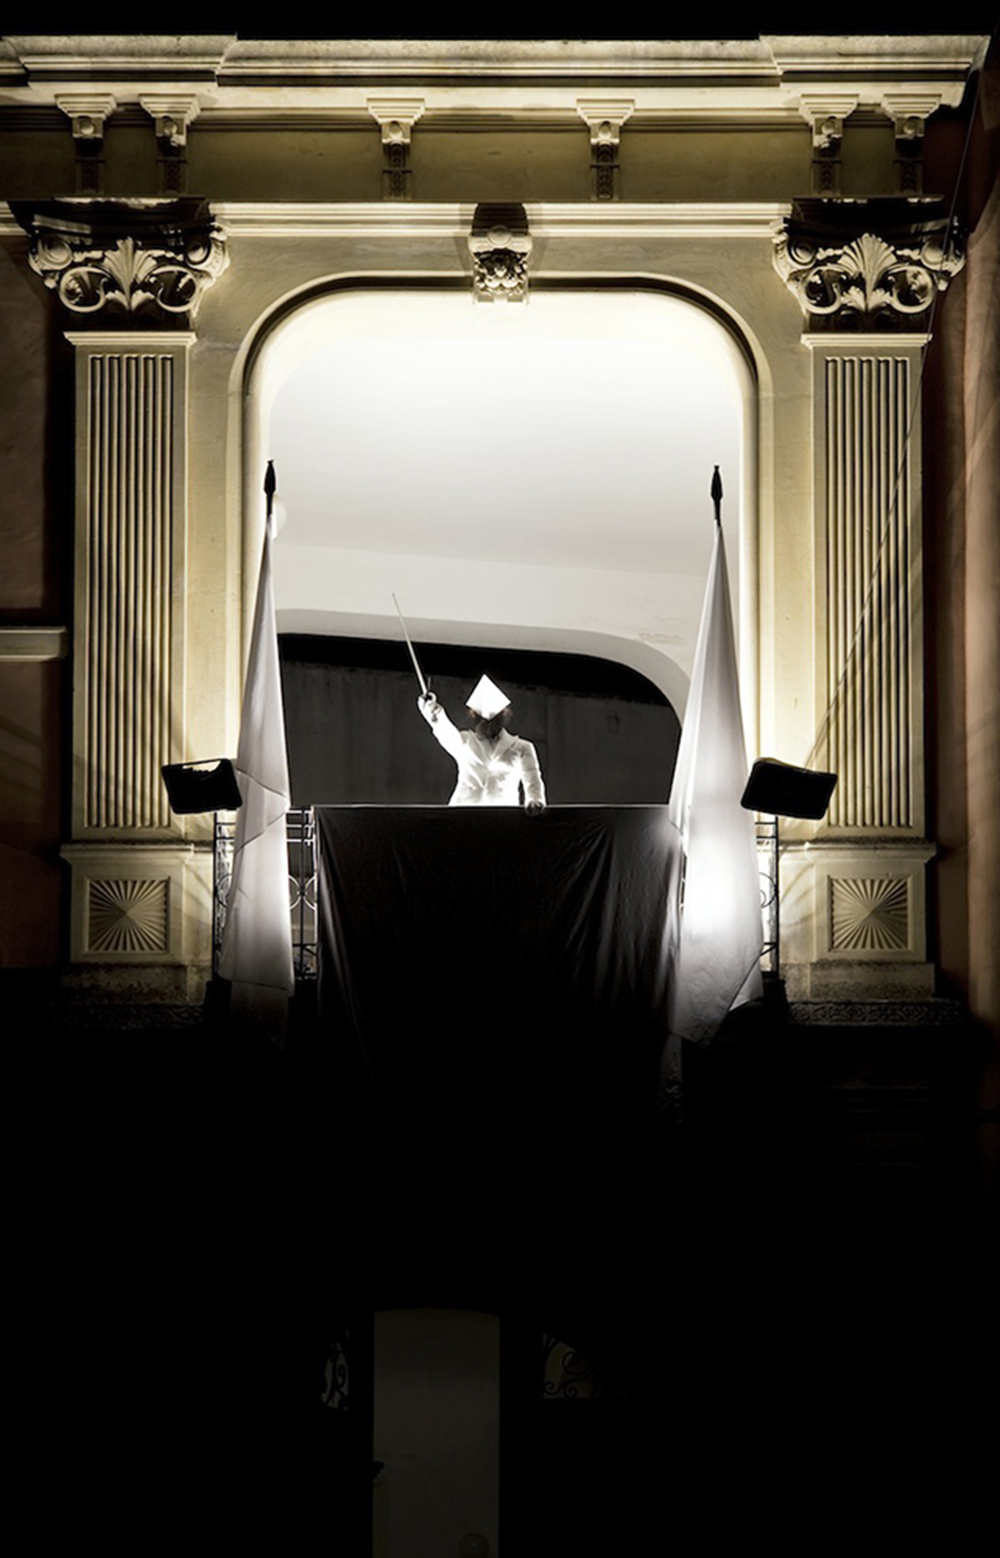 Trema profano trema, 2010, performance inattesa per il pubblico del concerto di Patrick Watson. Palazzo del municipio, Monteroni di Lecce (LE), cm 150x96